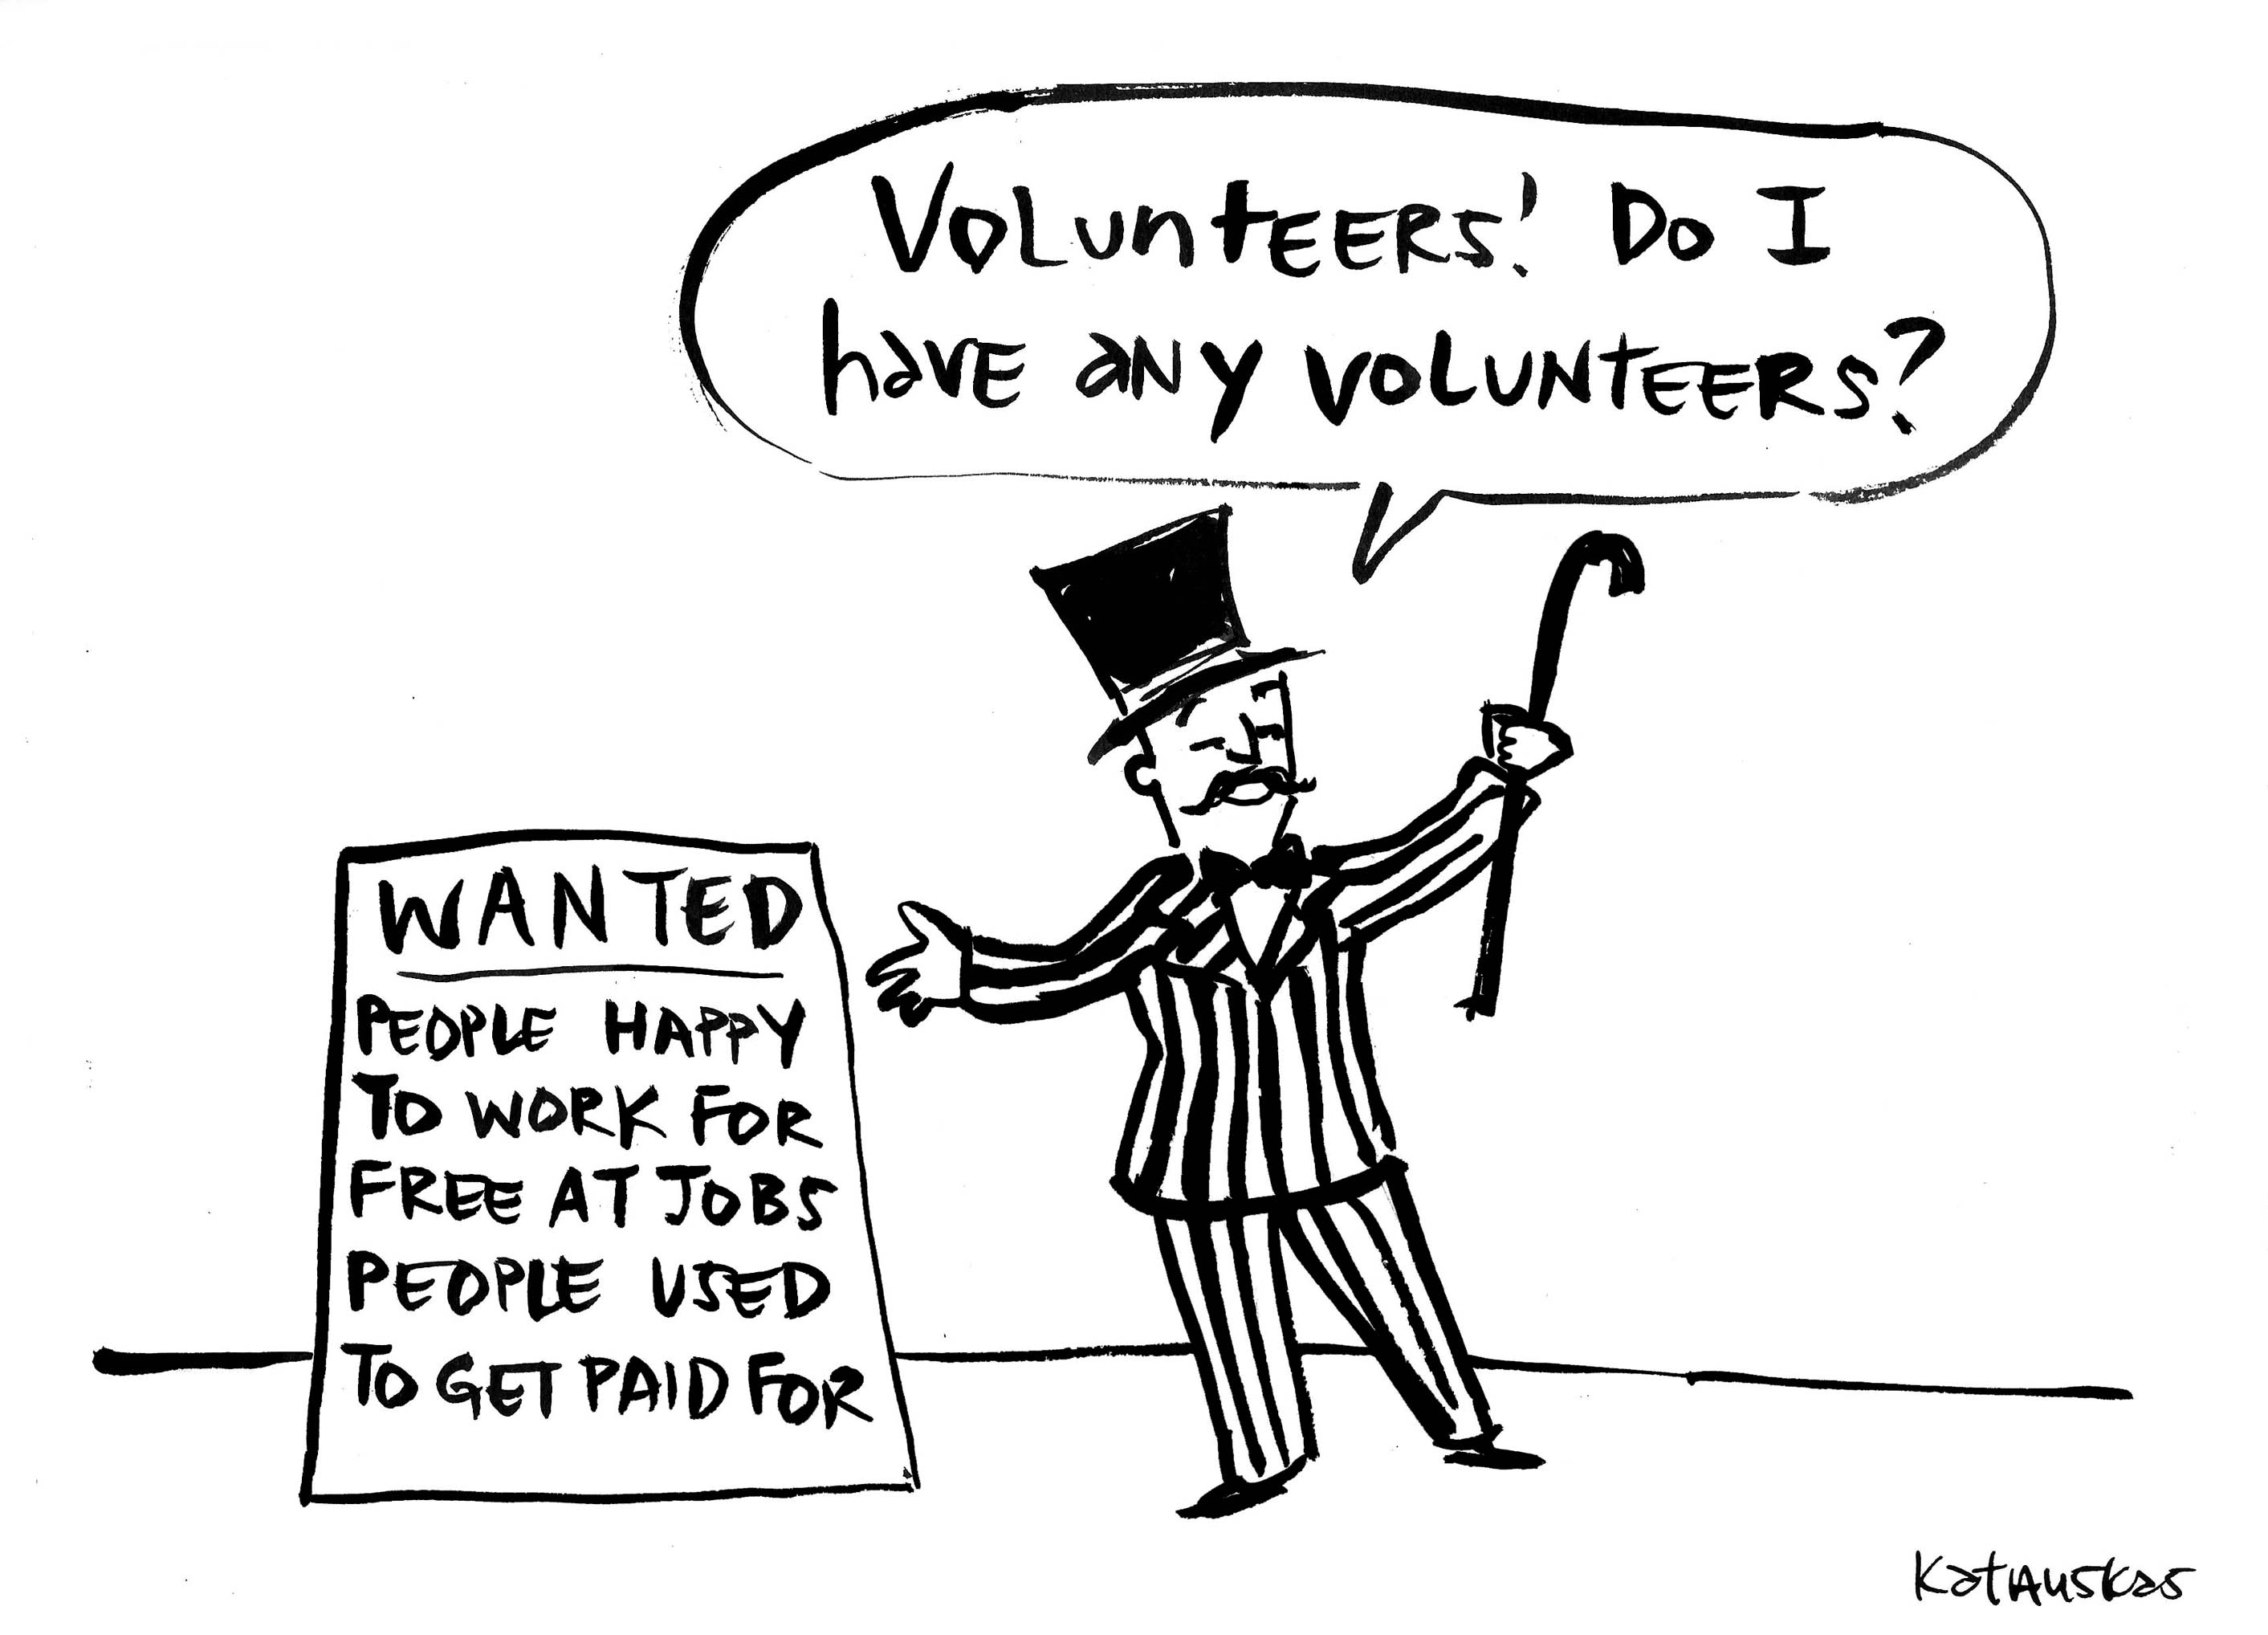 Fiona Katauskas cartoon: "do I have any volunteers?"